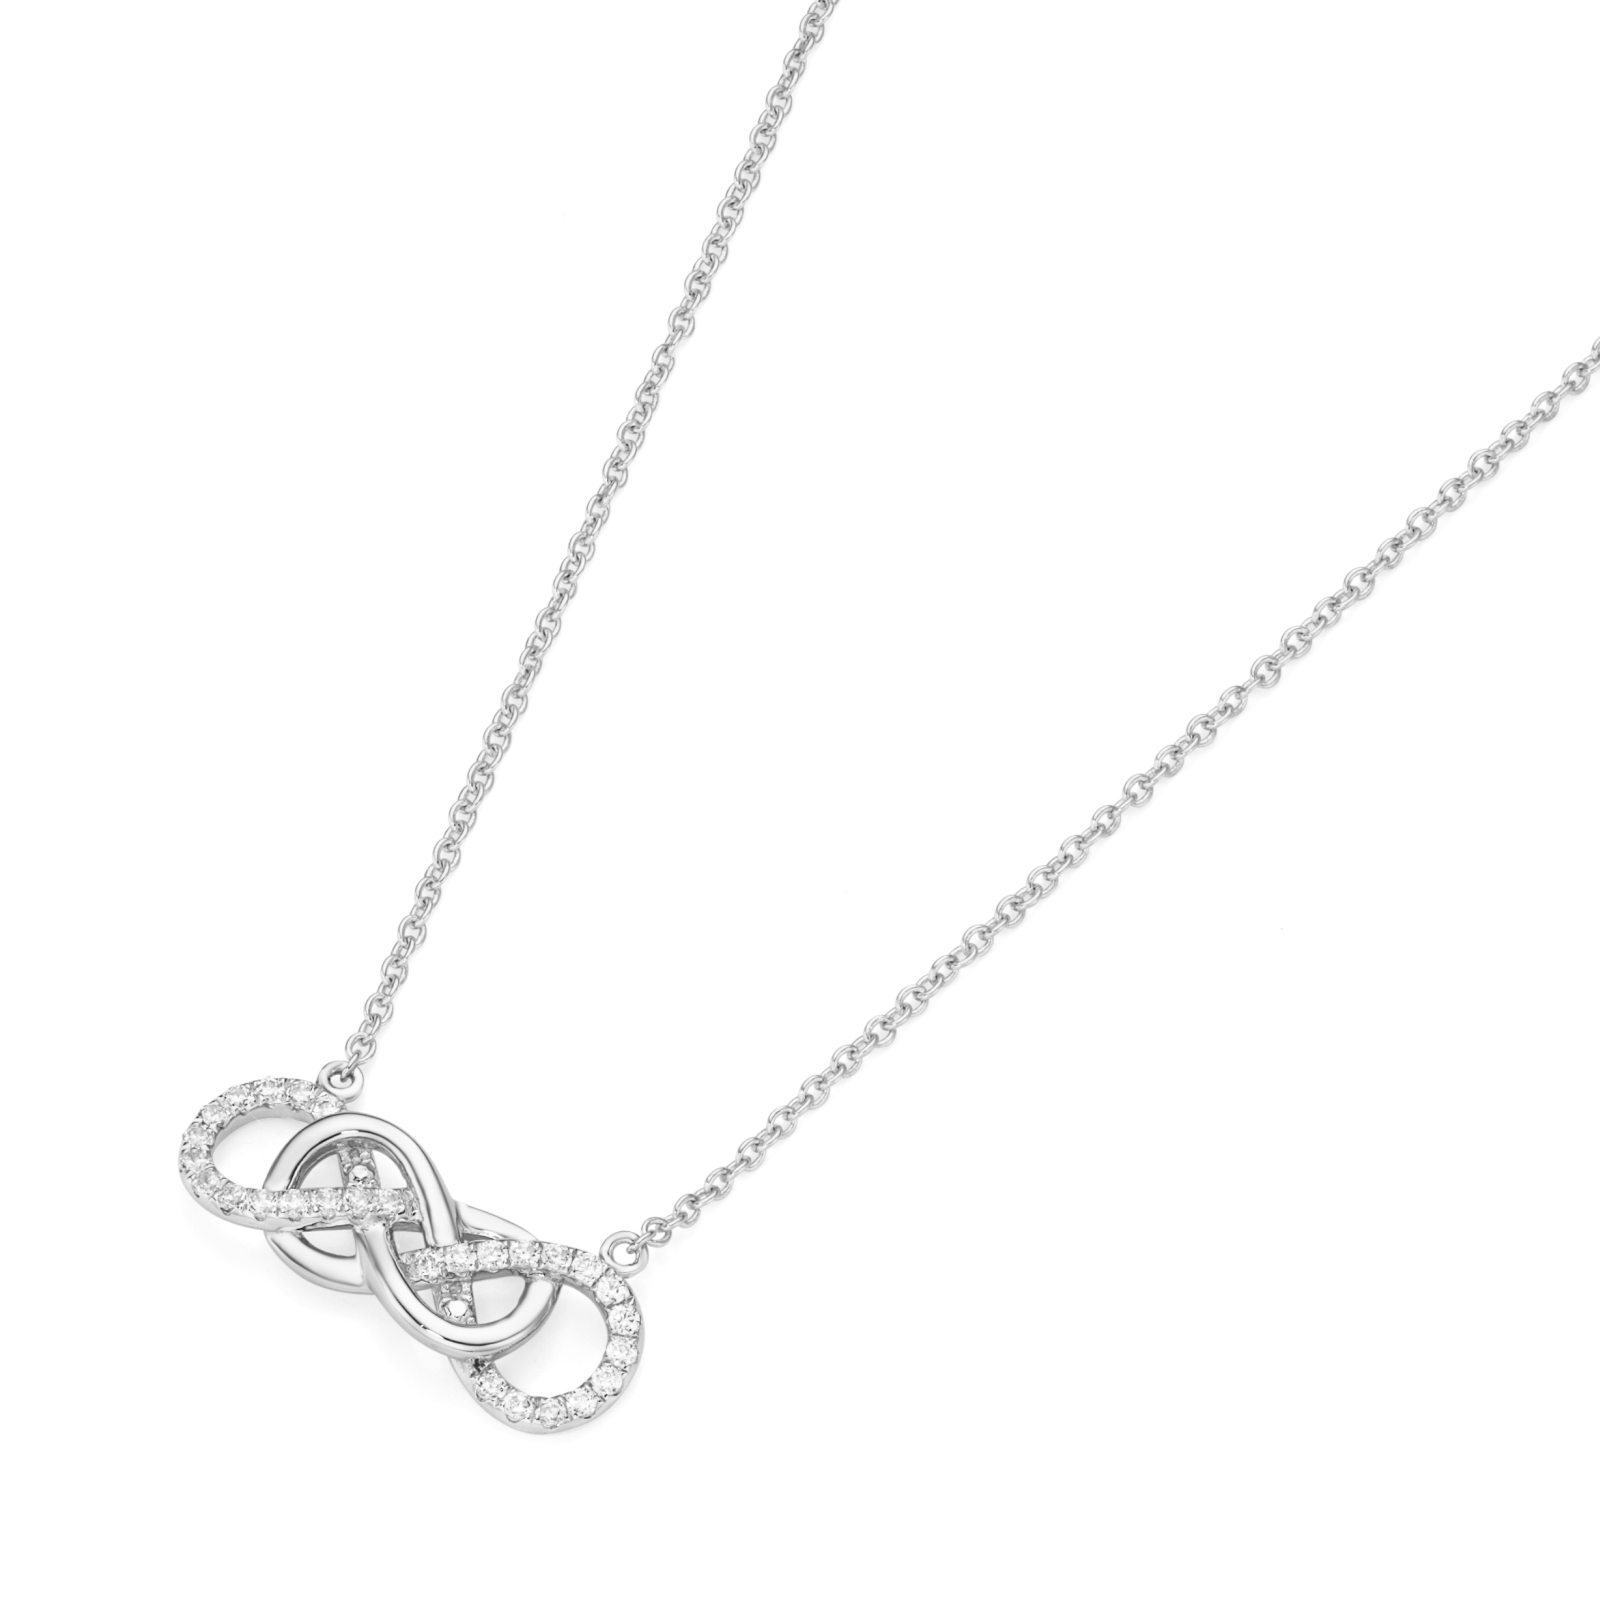 Silberkette Collier Infinity günstig kaufen bei Juwelierwelt.de © ★ Gratisversand ab 50€ ★ Paypal ★ trusted shops ★ 